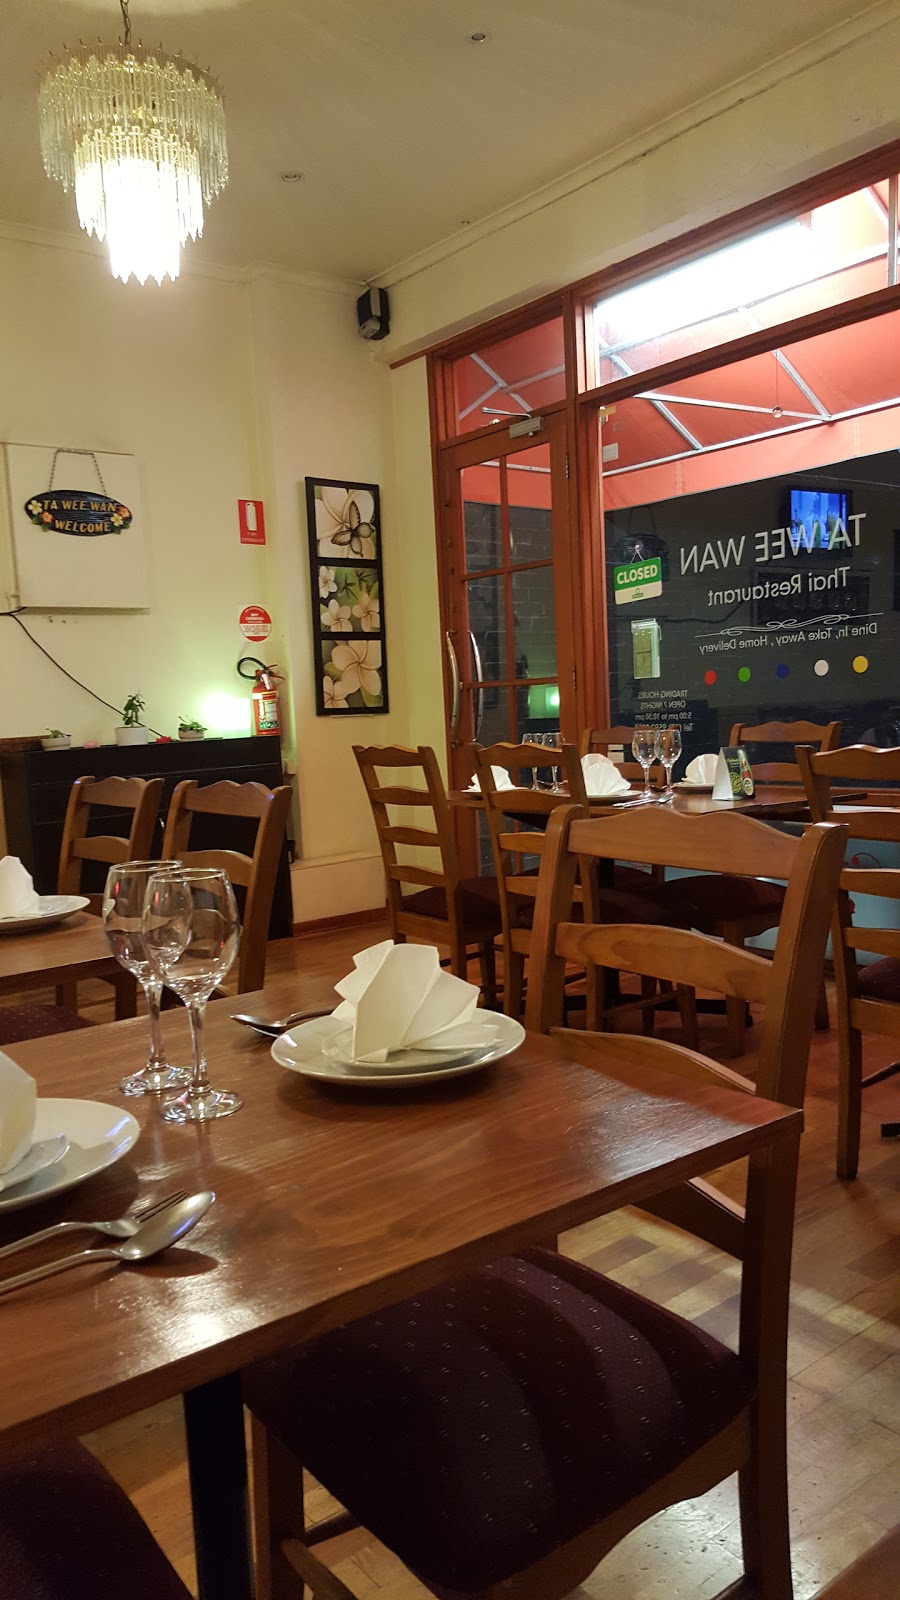 Ta Wee Wan Thai Restaurant | restaurant | 770 Hawthorn Rd, Brighton East VIC 3187, Australia | 0395920958 OR +61 3 9592 0958